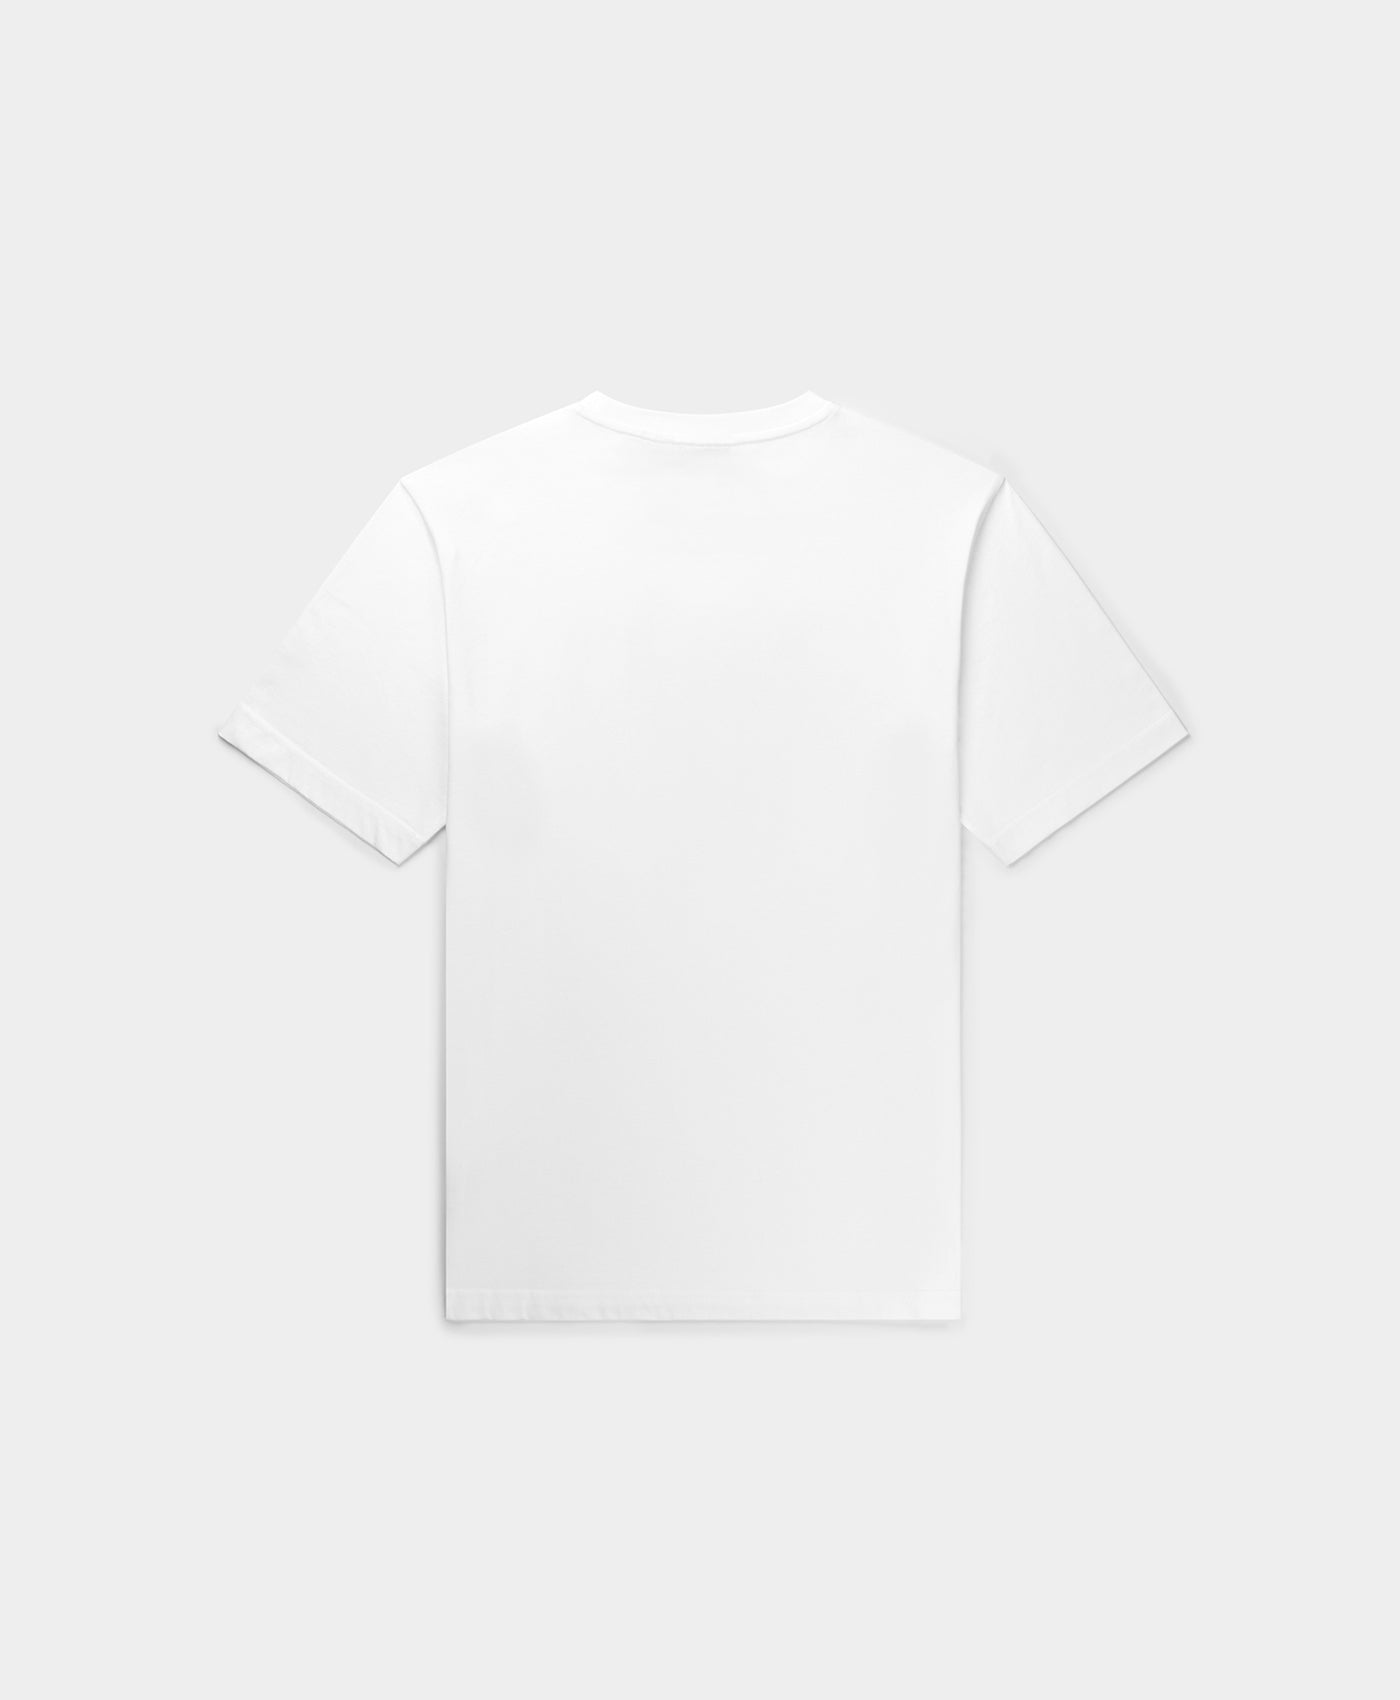 DP - White Parviz T-Shirt - Packshot - Rear